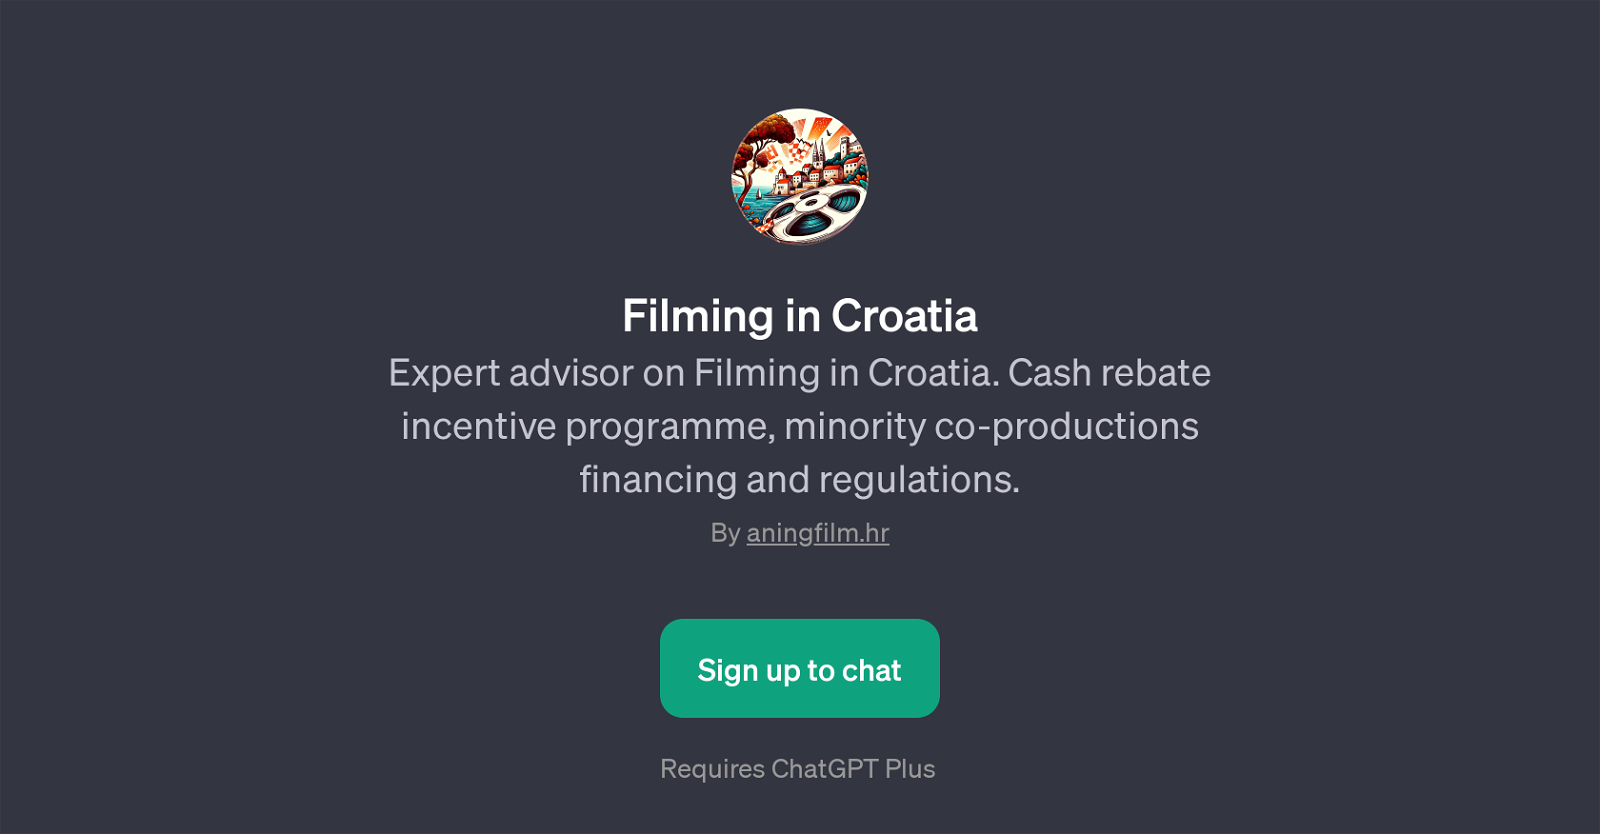 Filming in Croatia website